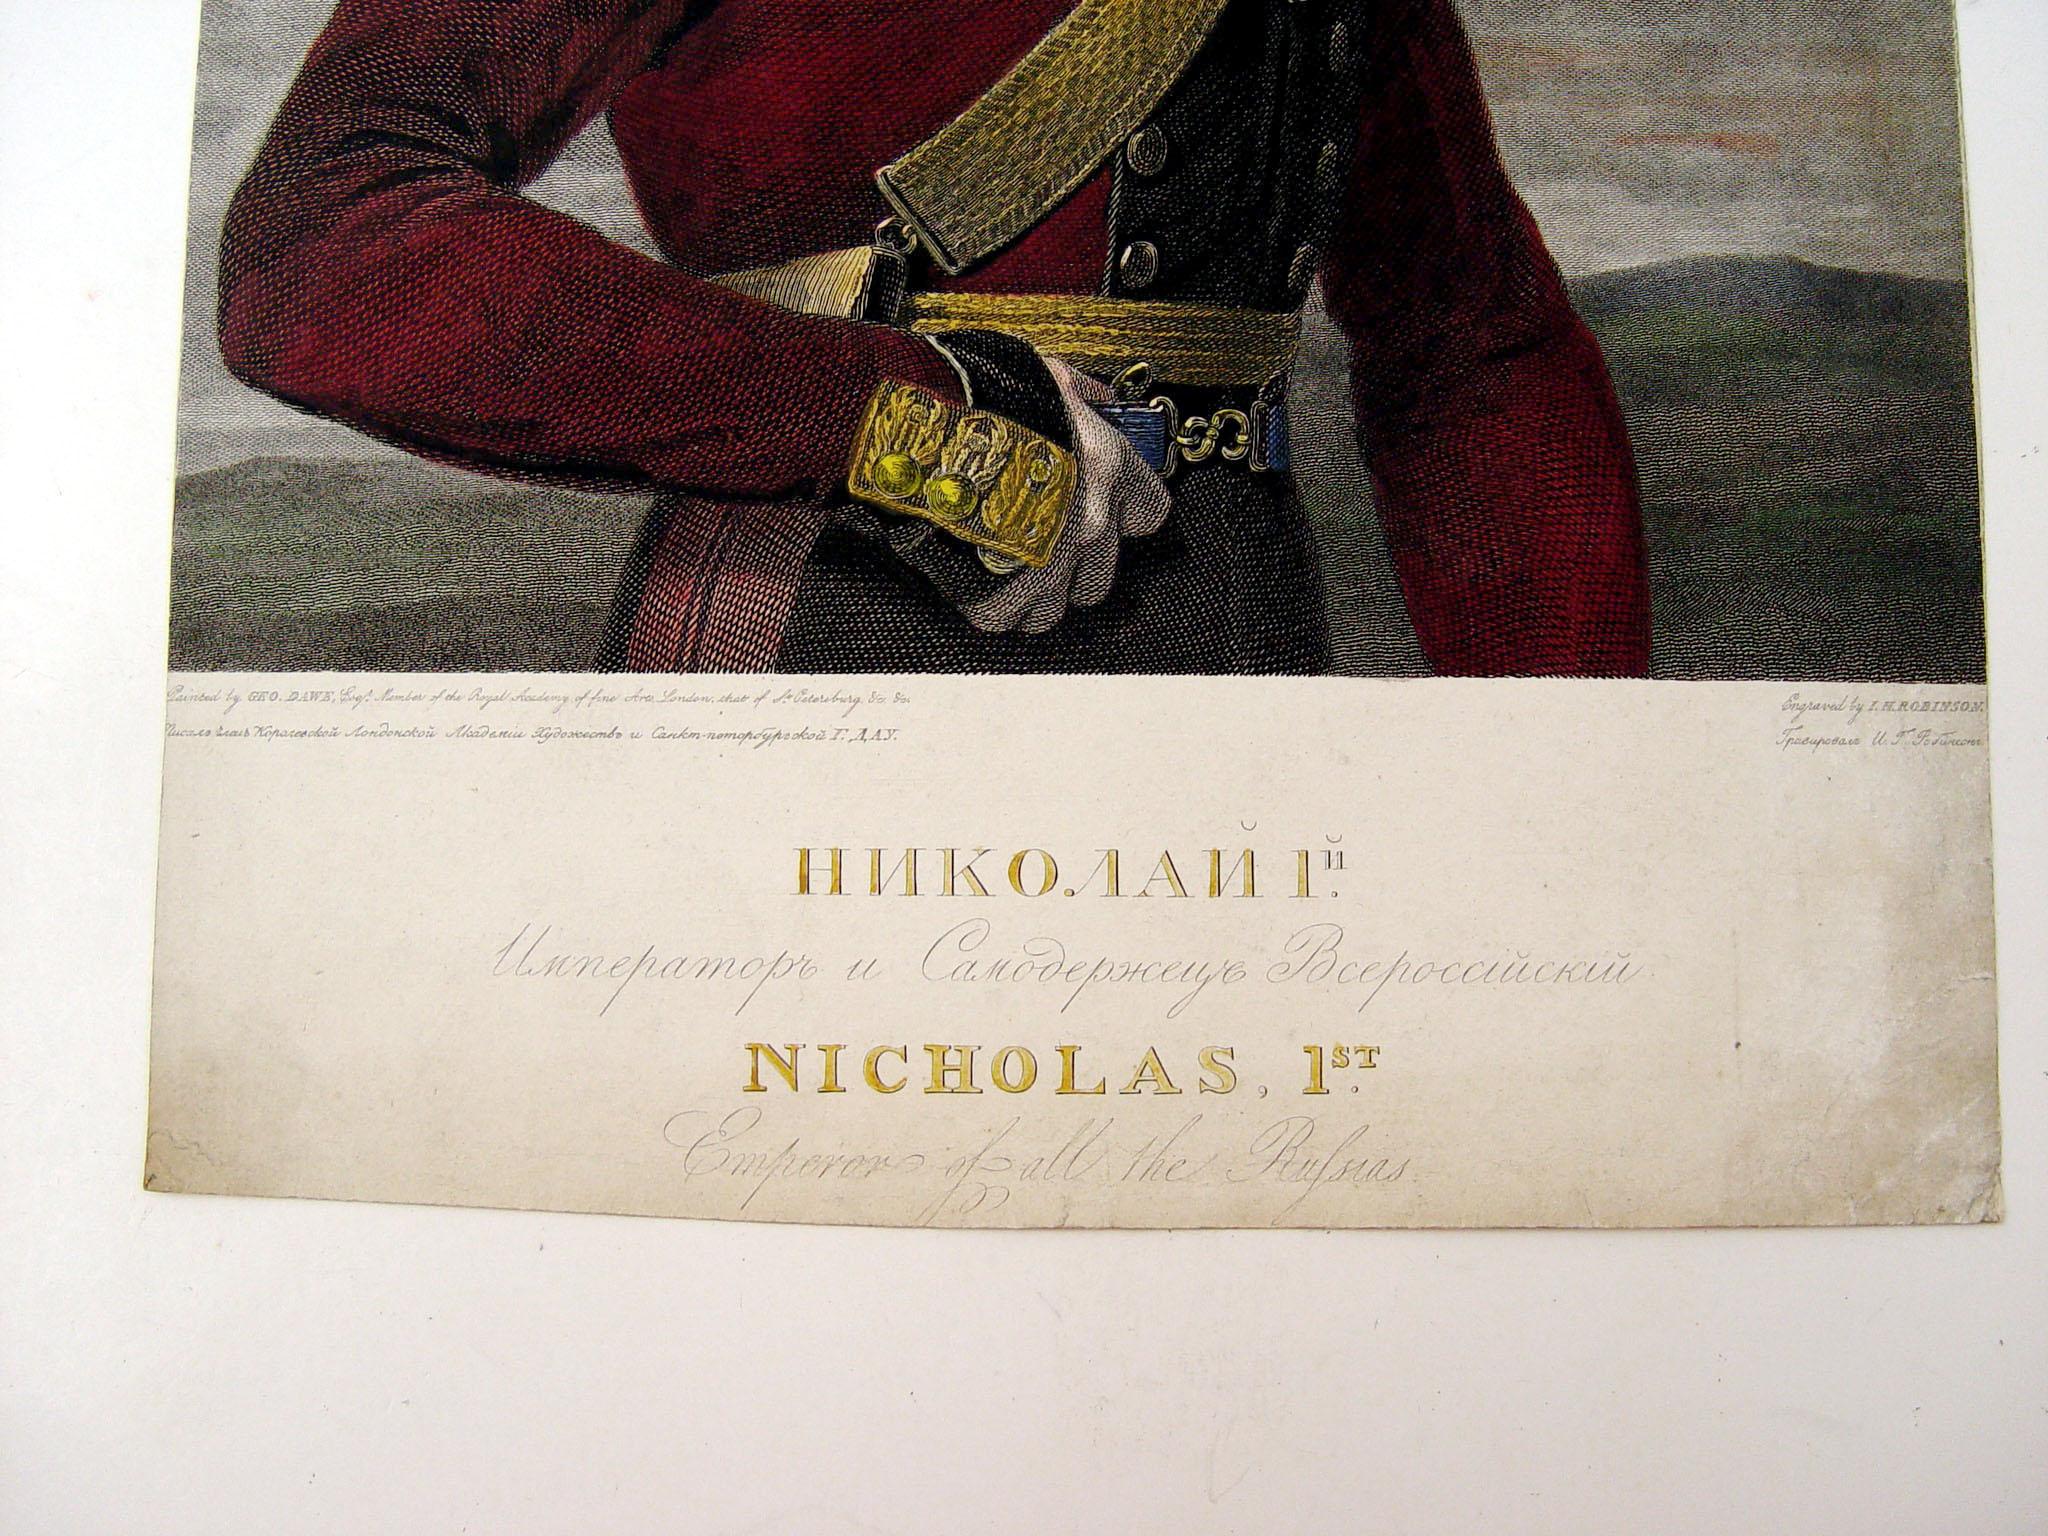 gravure de 1826 coloriée à la main de Nicolas 1er, empereur de Russie. Imprimé par George Dawe et gravé par John Henry Robinson. Non encadré, petite perte de papier sur les bords, quelques taches de vieillesse sur les bords.